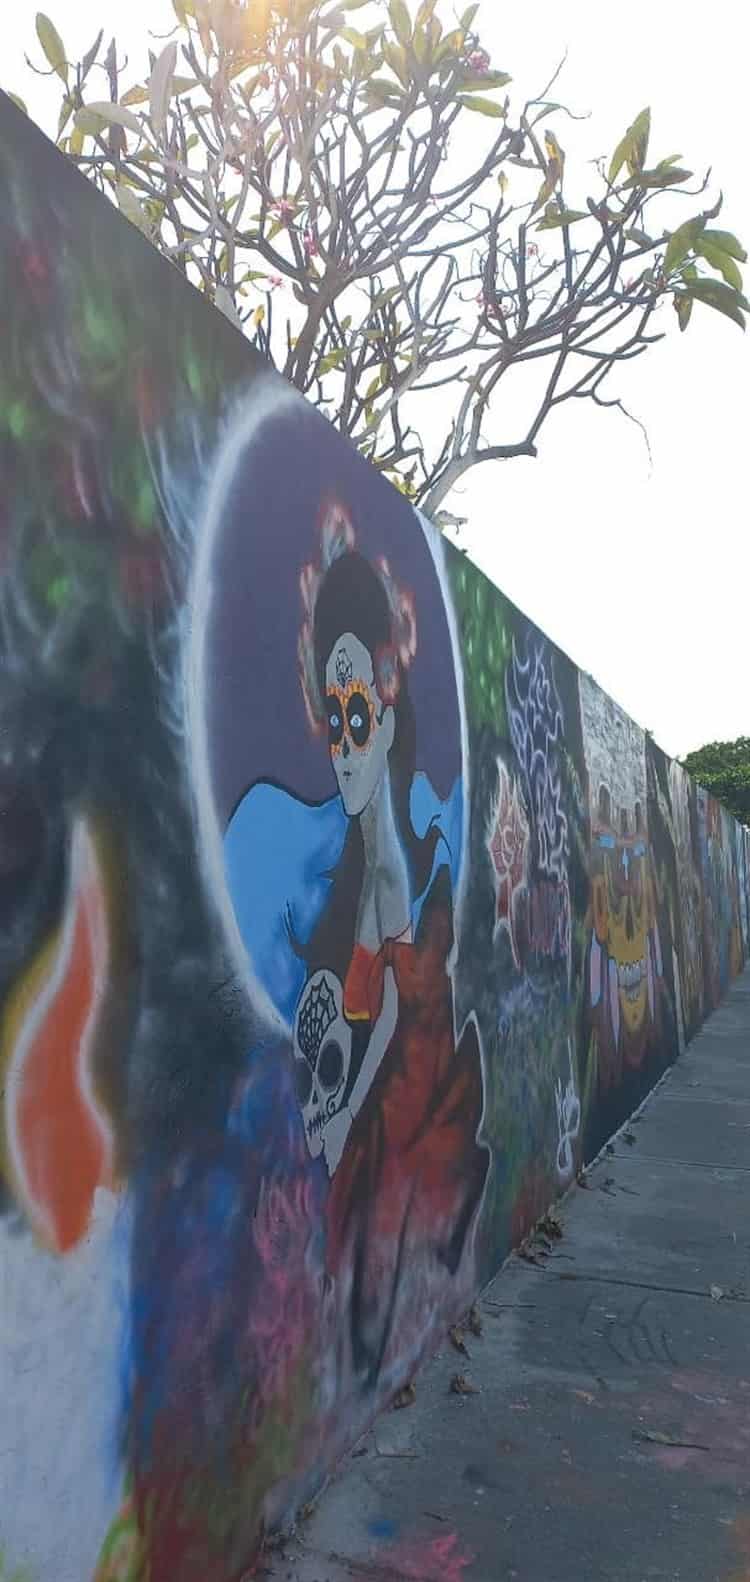 Pintan mural alusivo al Día de Todos Santos en el Panteón Municipal de Veracruz